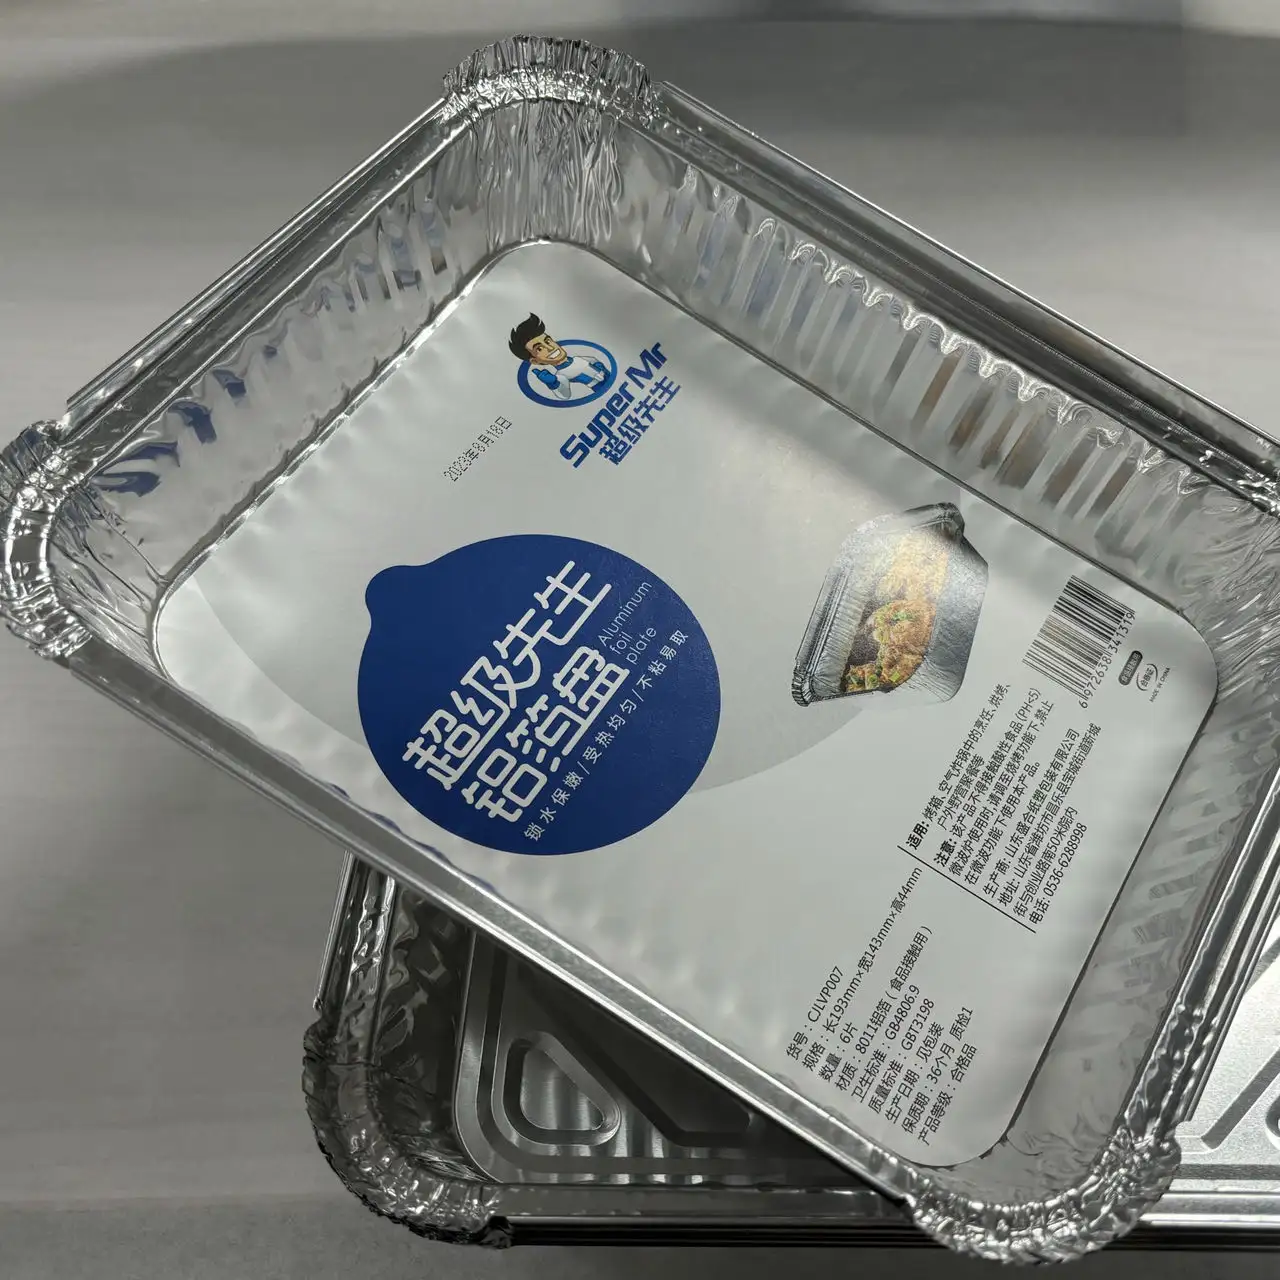 Recipiente retangular de alumínio descartável para levar comida, bandeja de alumínio 8011 para assar, para uso na cozinha